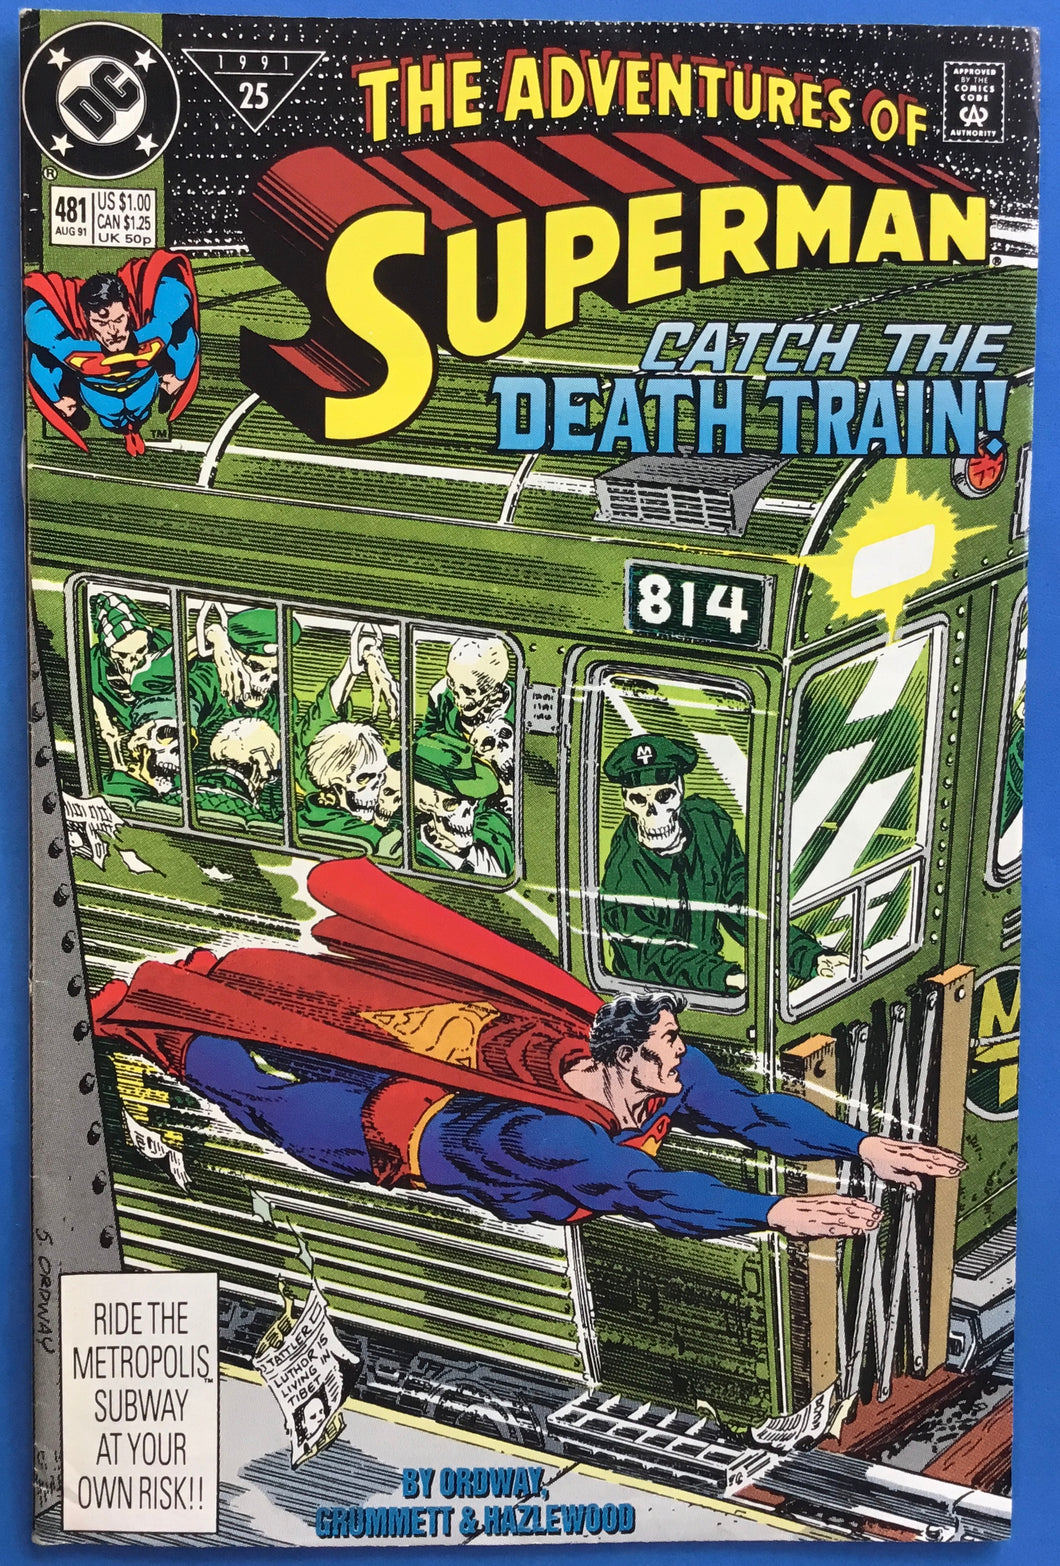 Adventures of Superman No. #481 1991 DC Comics